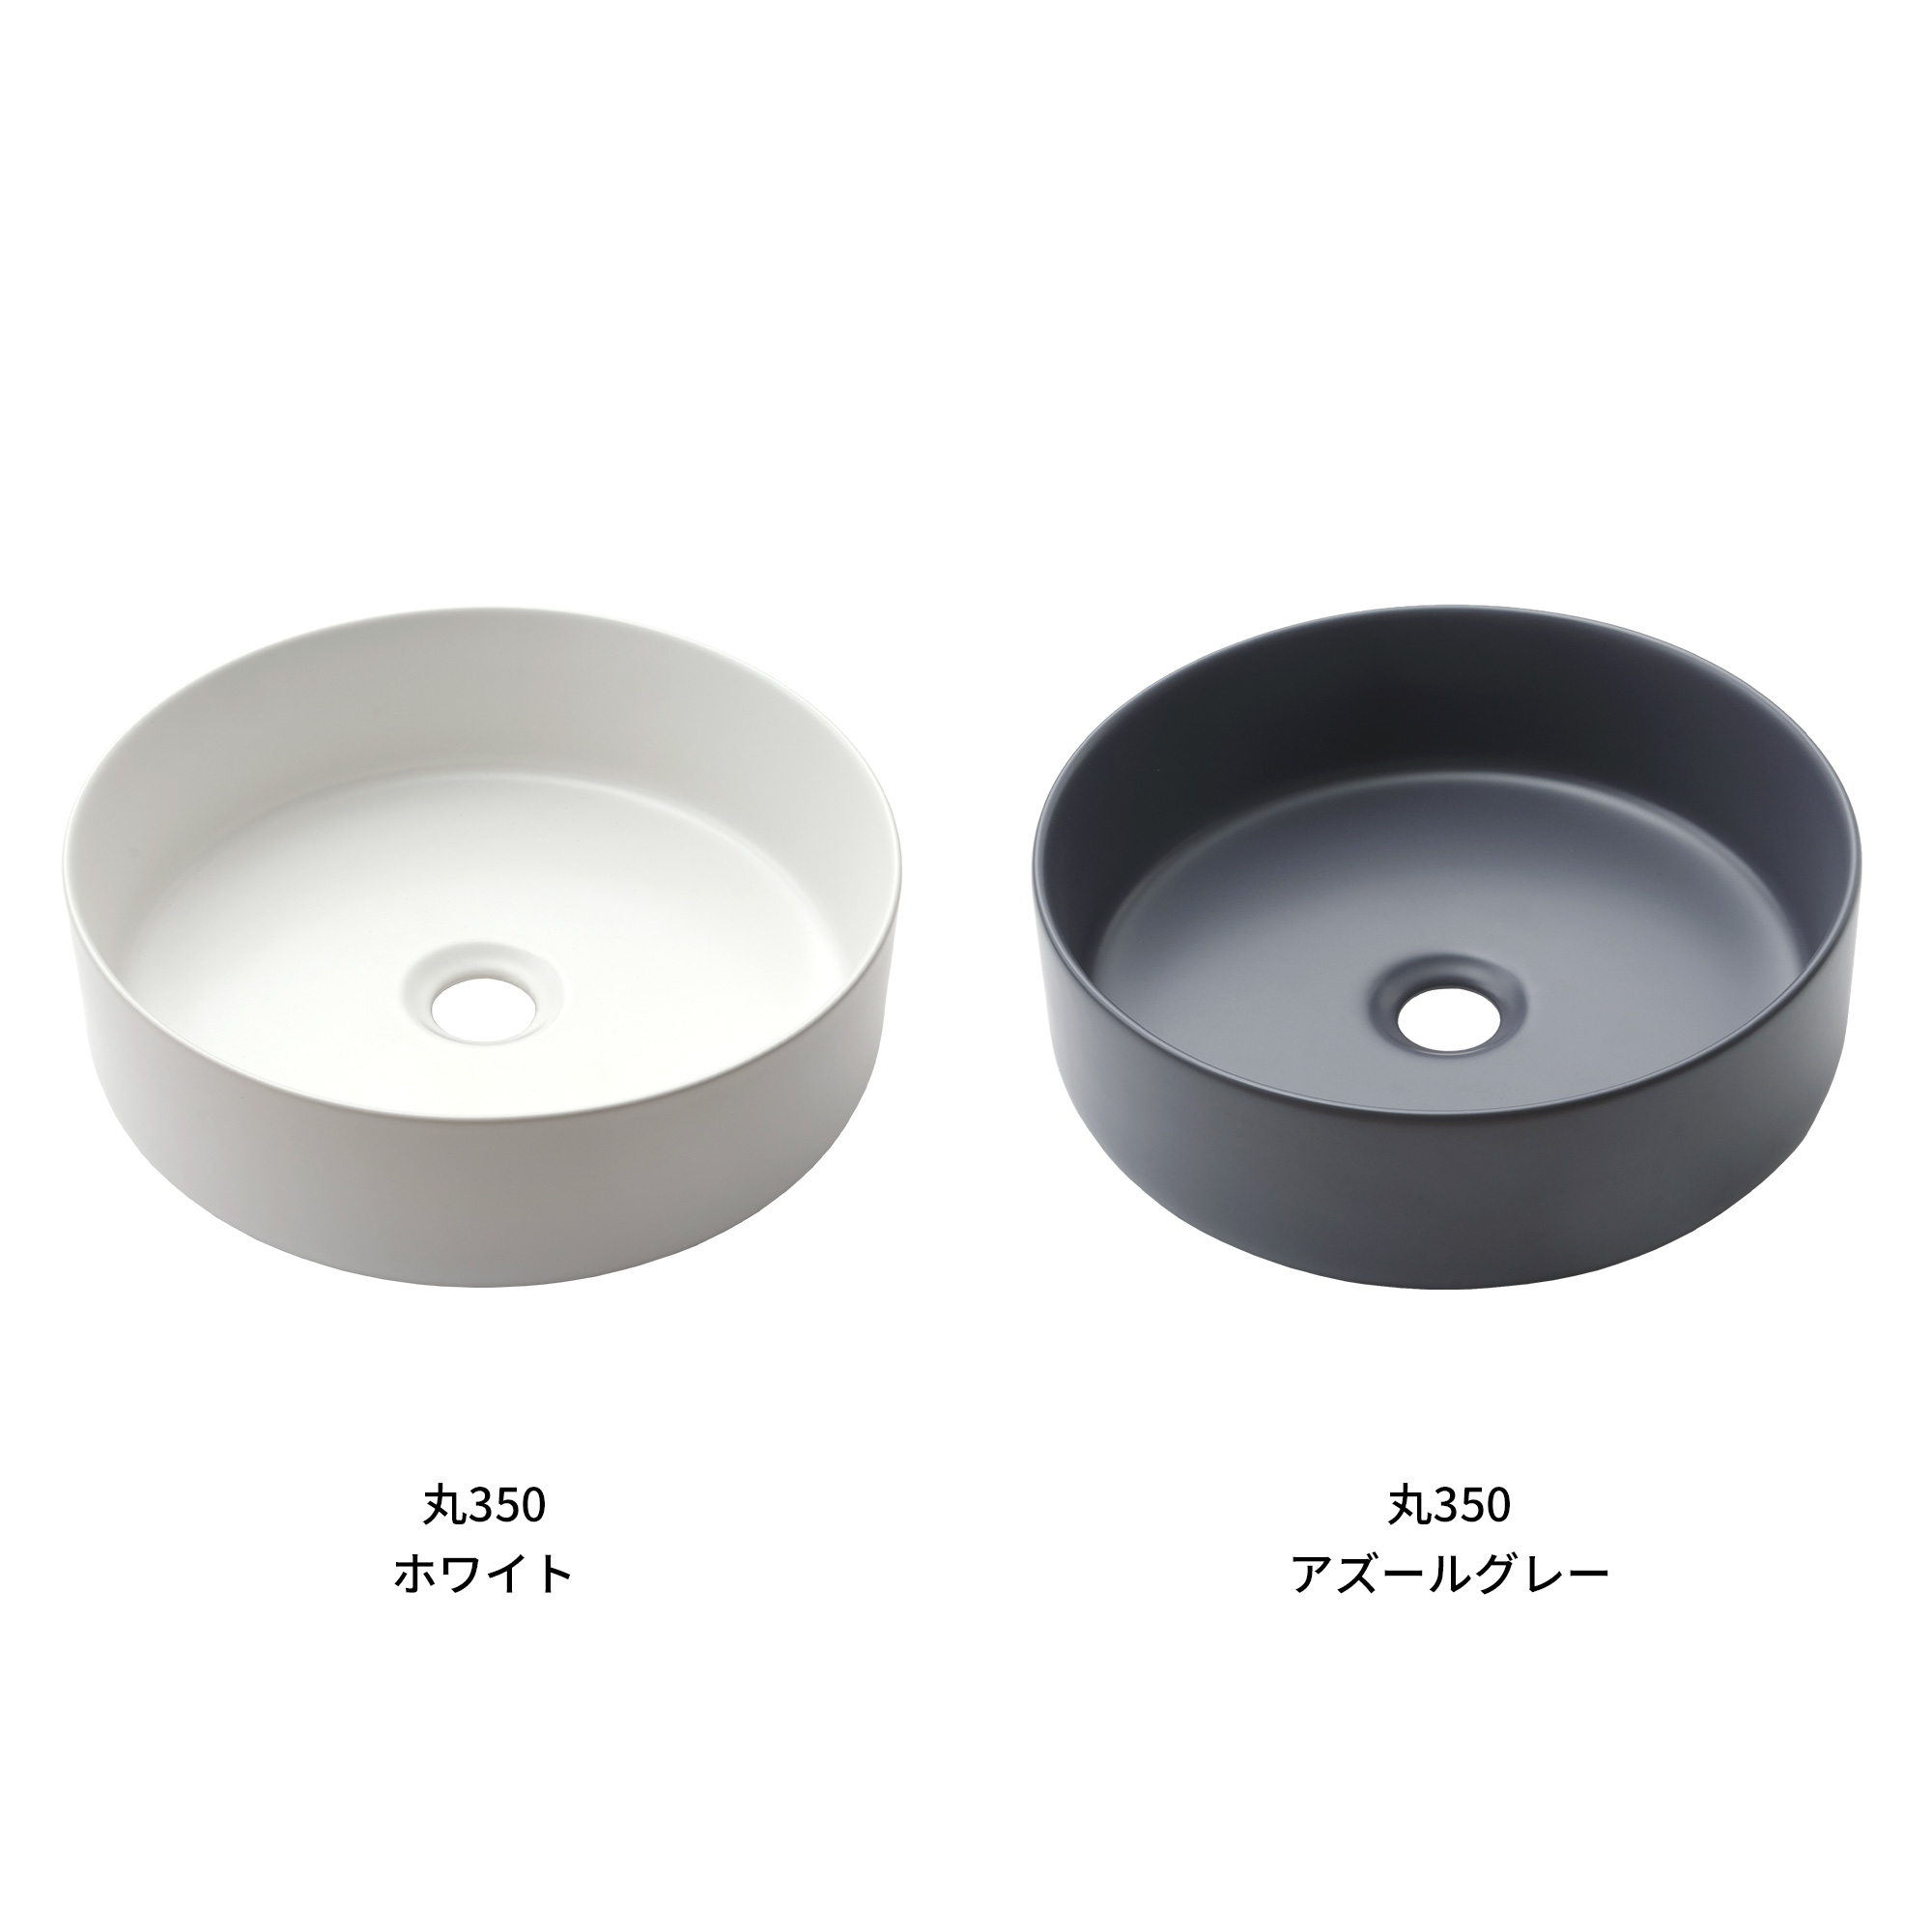 木の手洗いカウンター 陶器の手洗い器 丸350 壁水栓用 KB-PR013-03-G165 マットで空間になじみやすい質感の手洗い器です。洗面器としても使えるサイズです